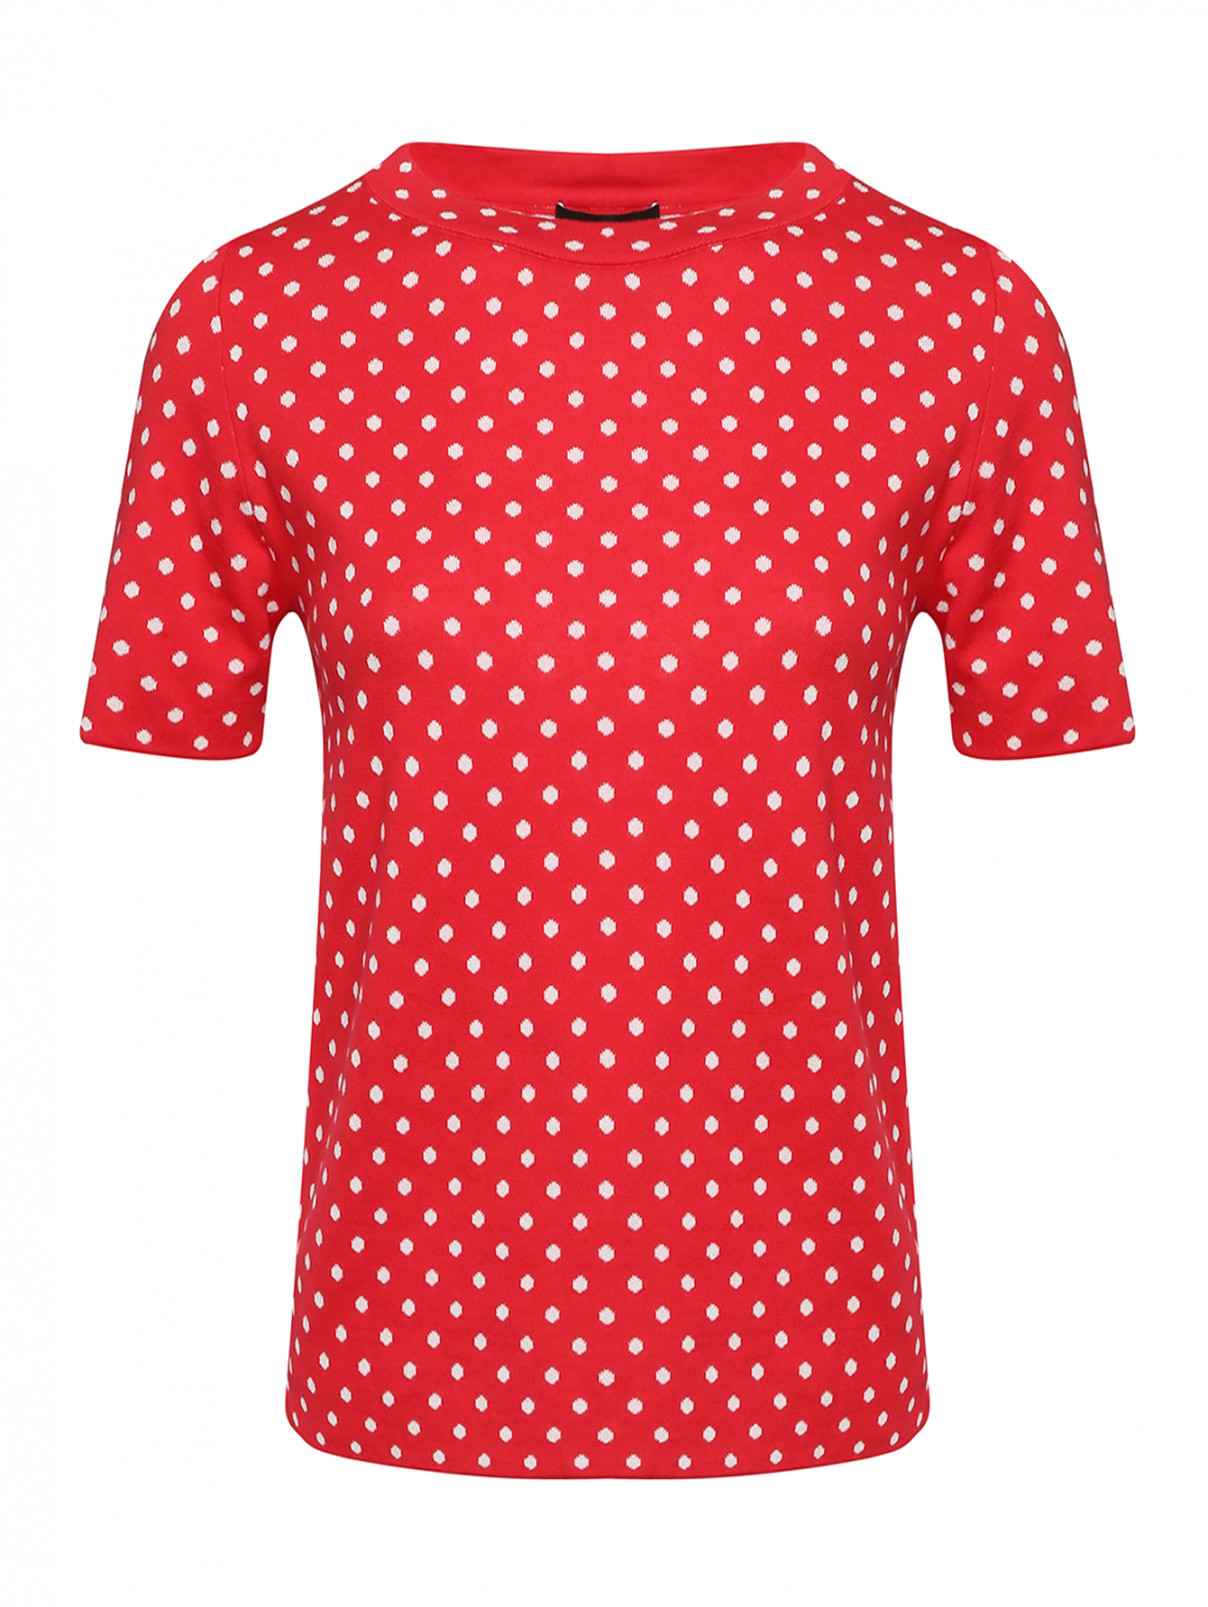 Джемпер хлопковый с узором горох Moschino Boutique  –  Общий вид  – Цвет:  Красный